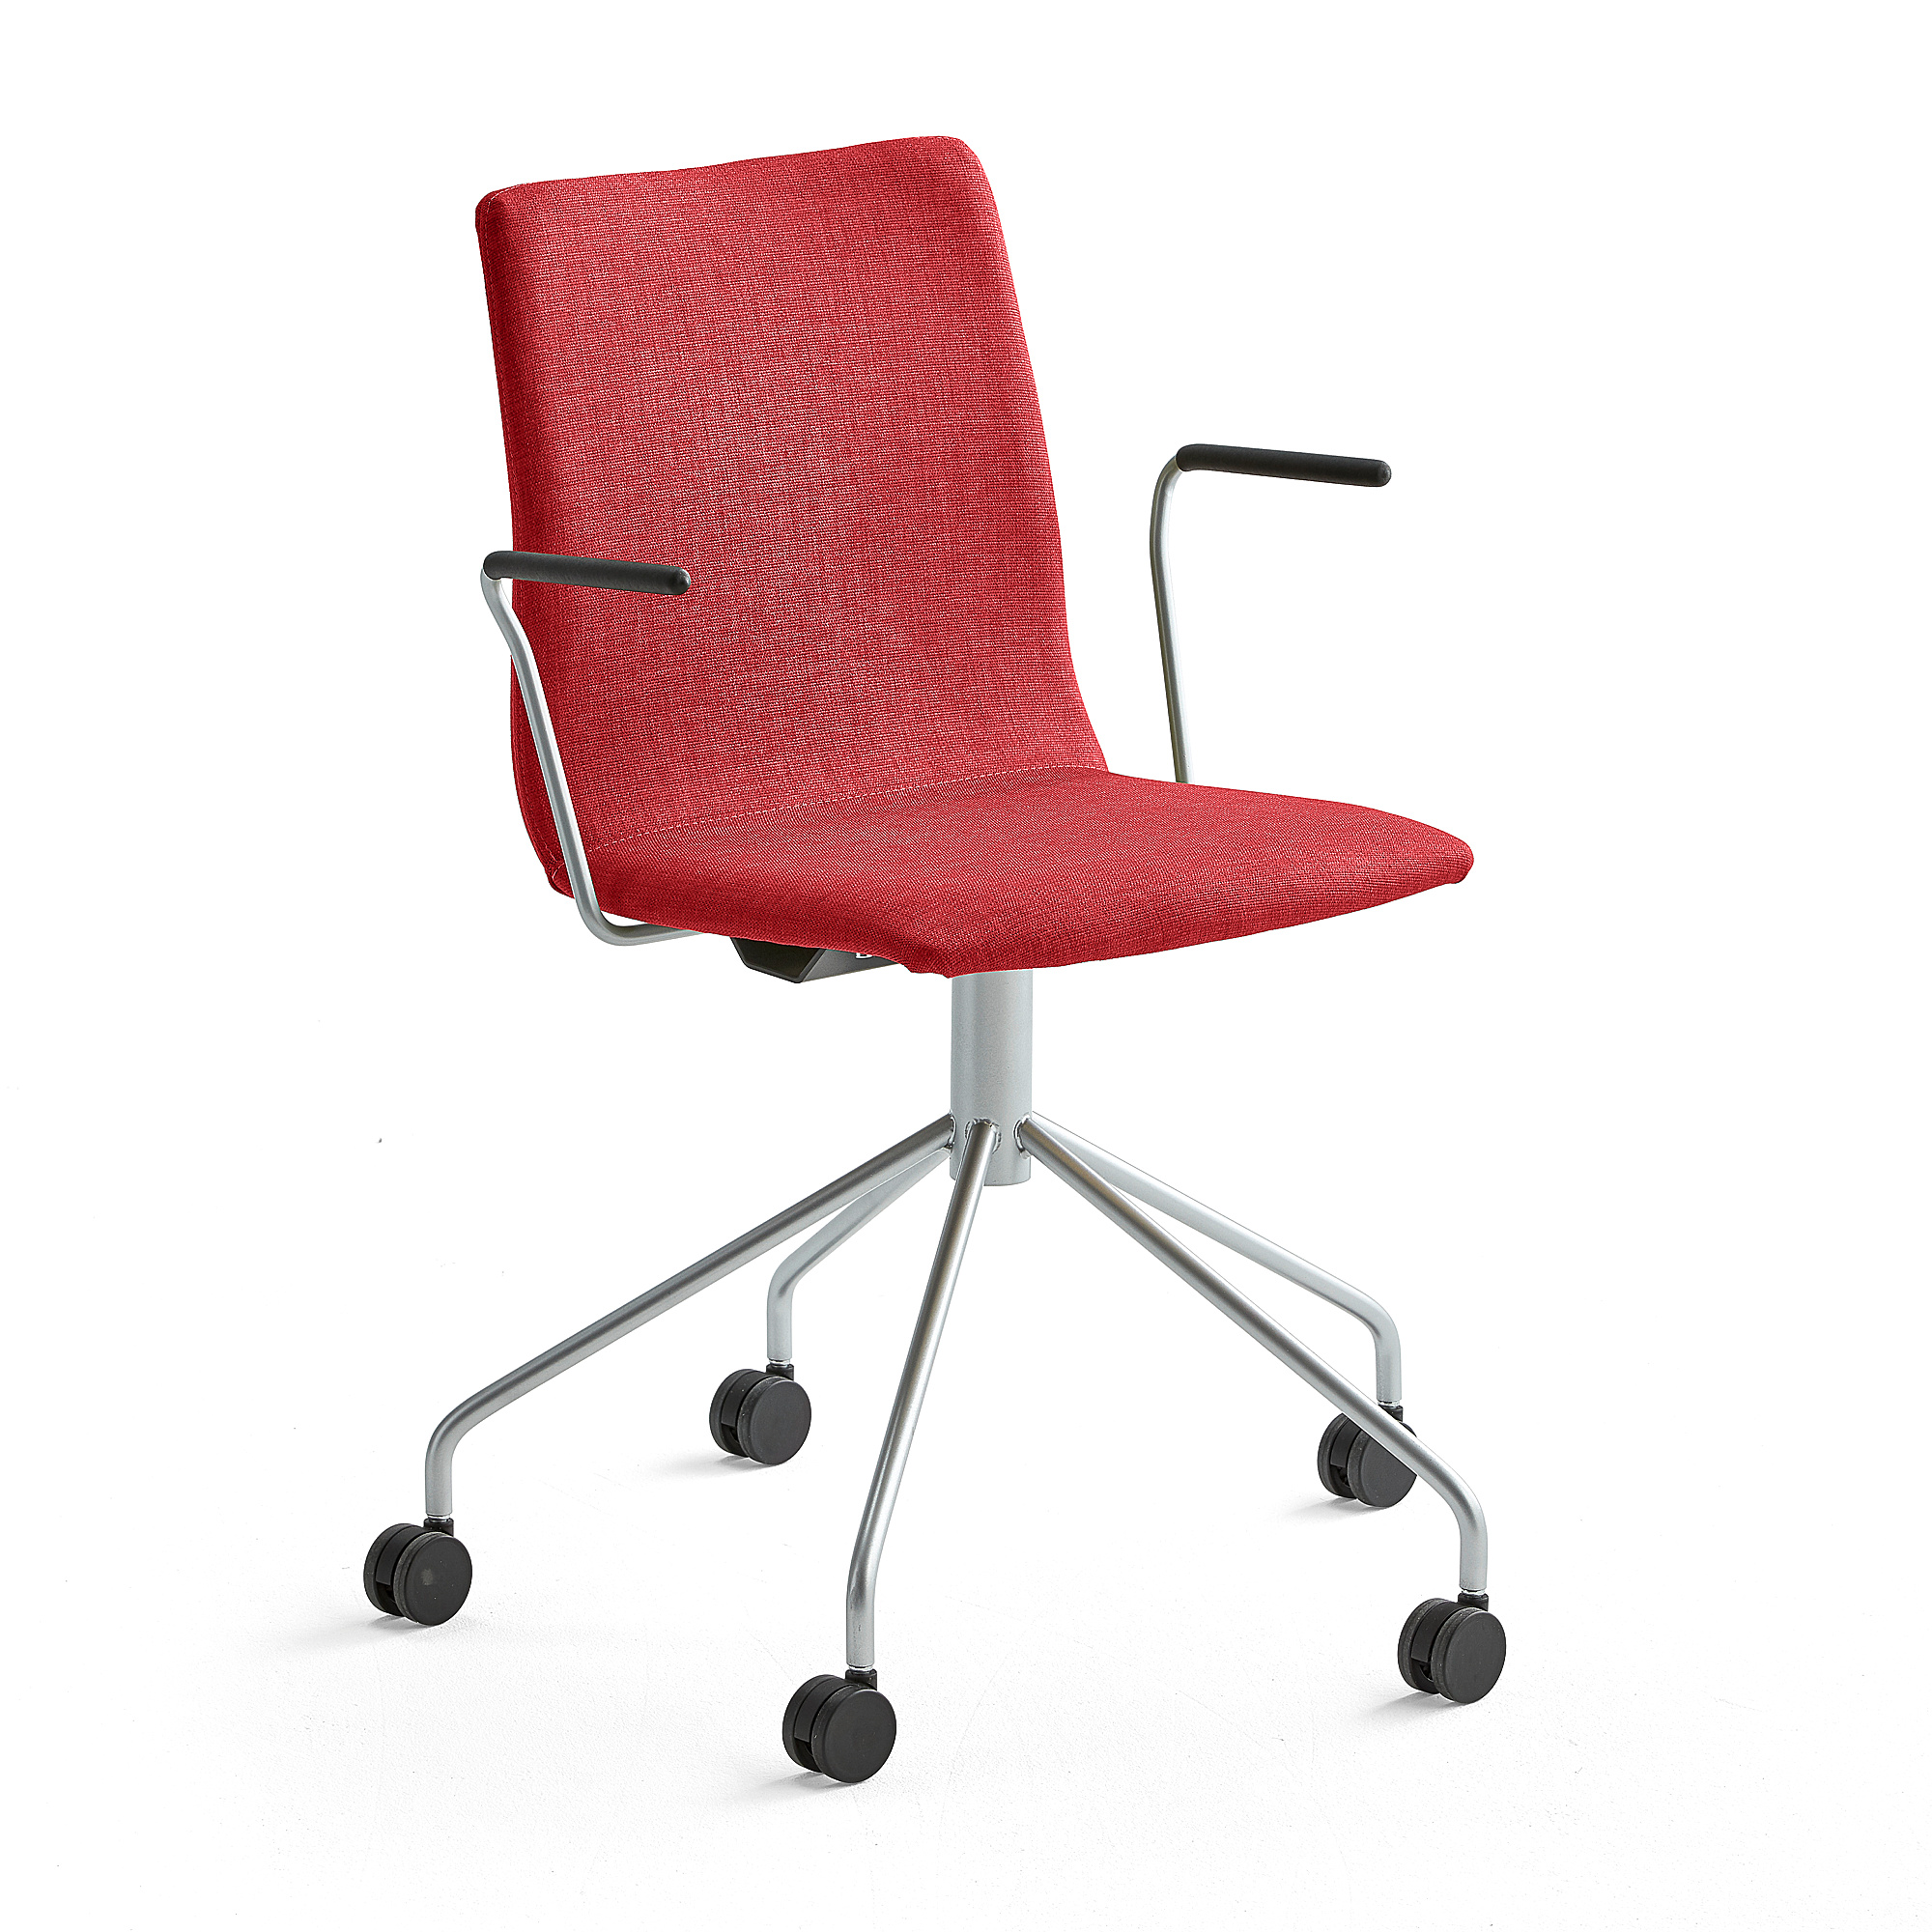 Konferenčná stolička OTTAWA, s kolieskami a opierkami rúk, červená, šedá